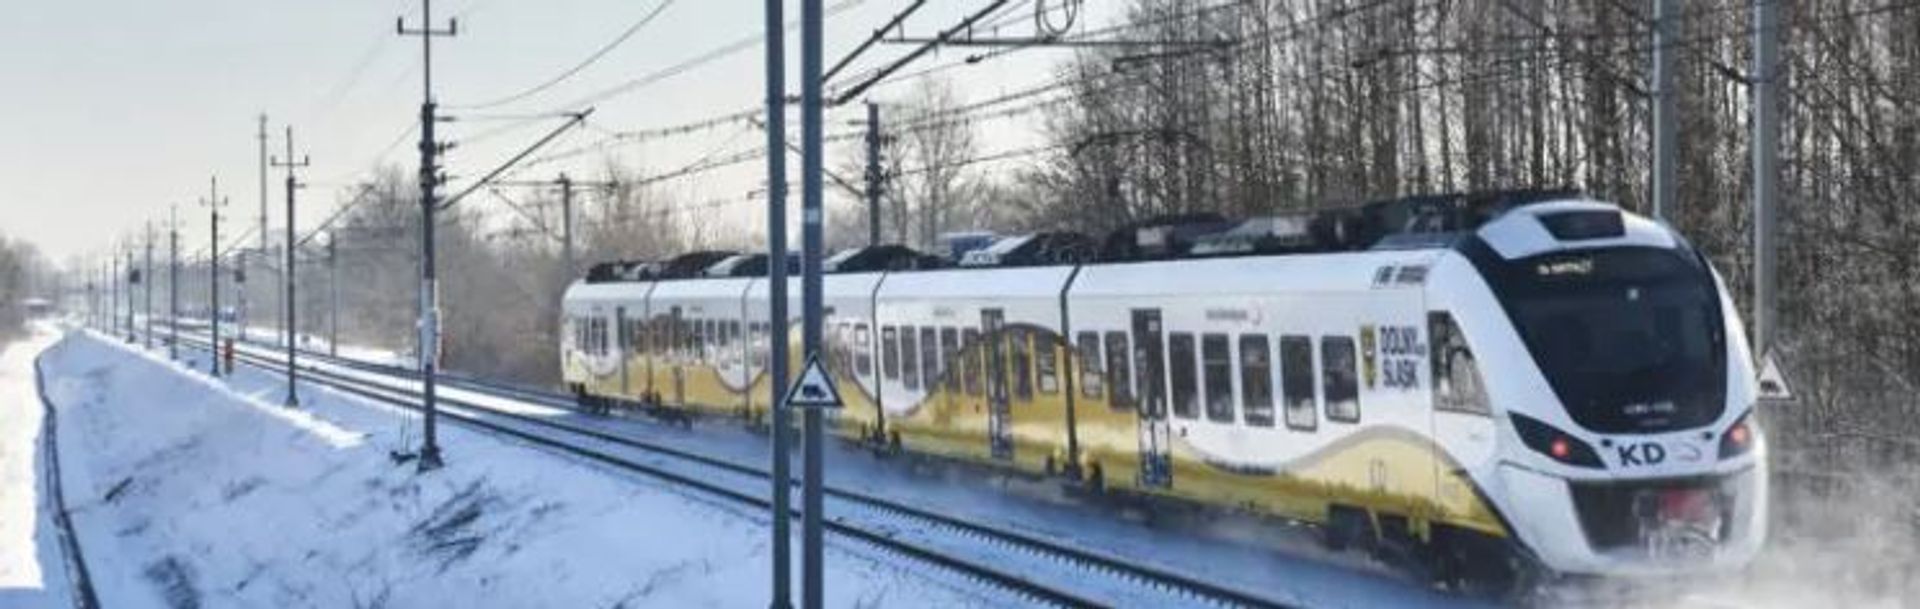 W nowym rozkładzie jazdy na Dolnym Śląsku przybędzie pociągów